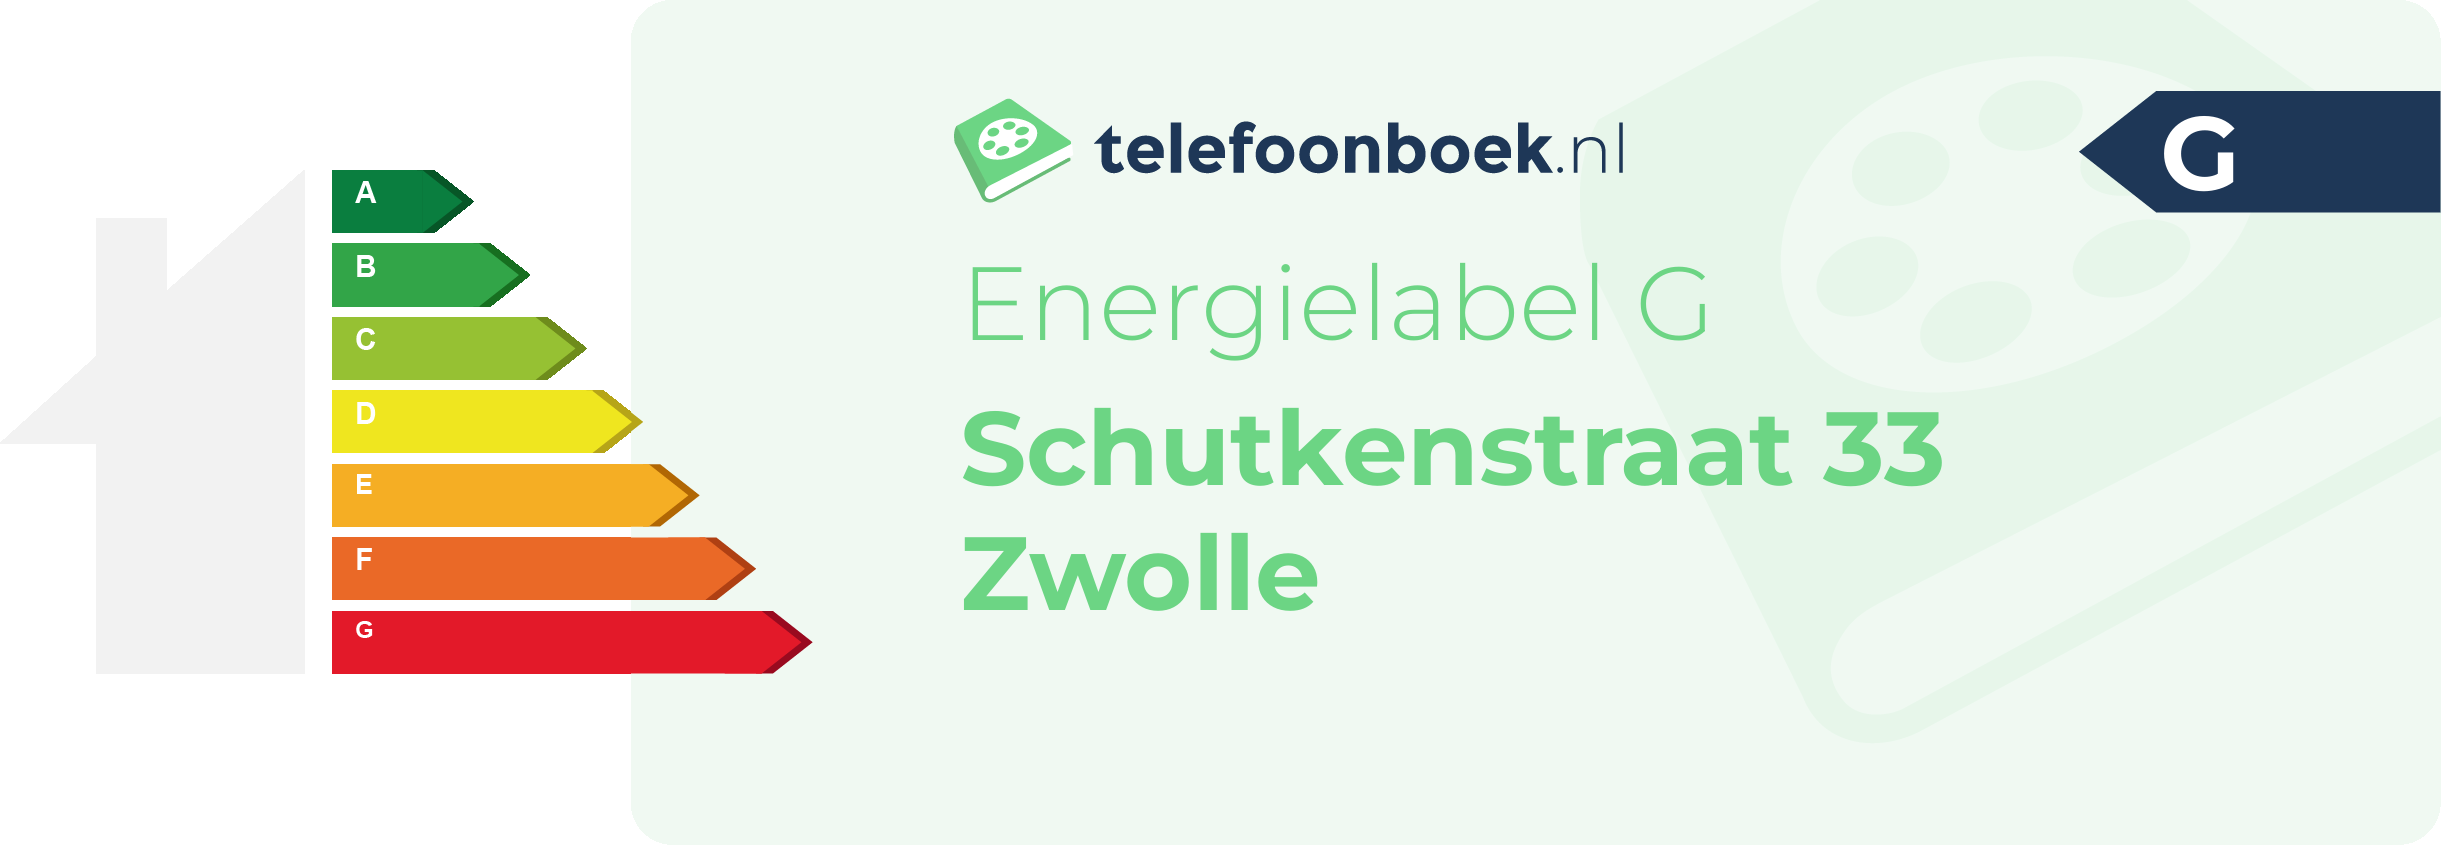 Energielabel Schutkenstraat 33 Zwolle